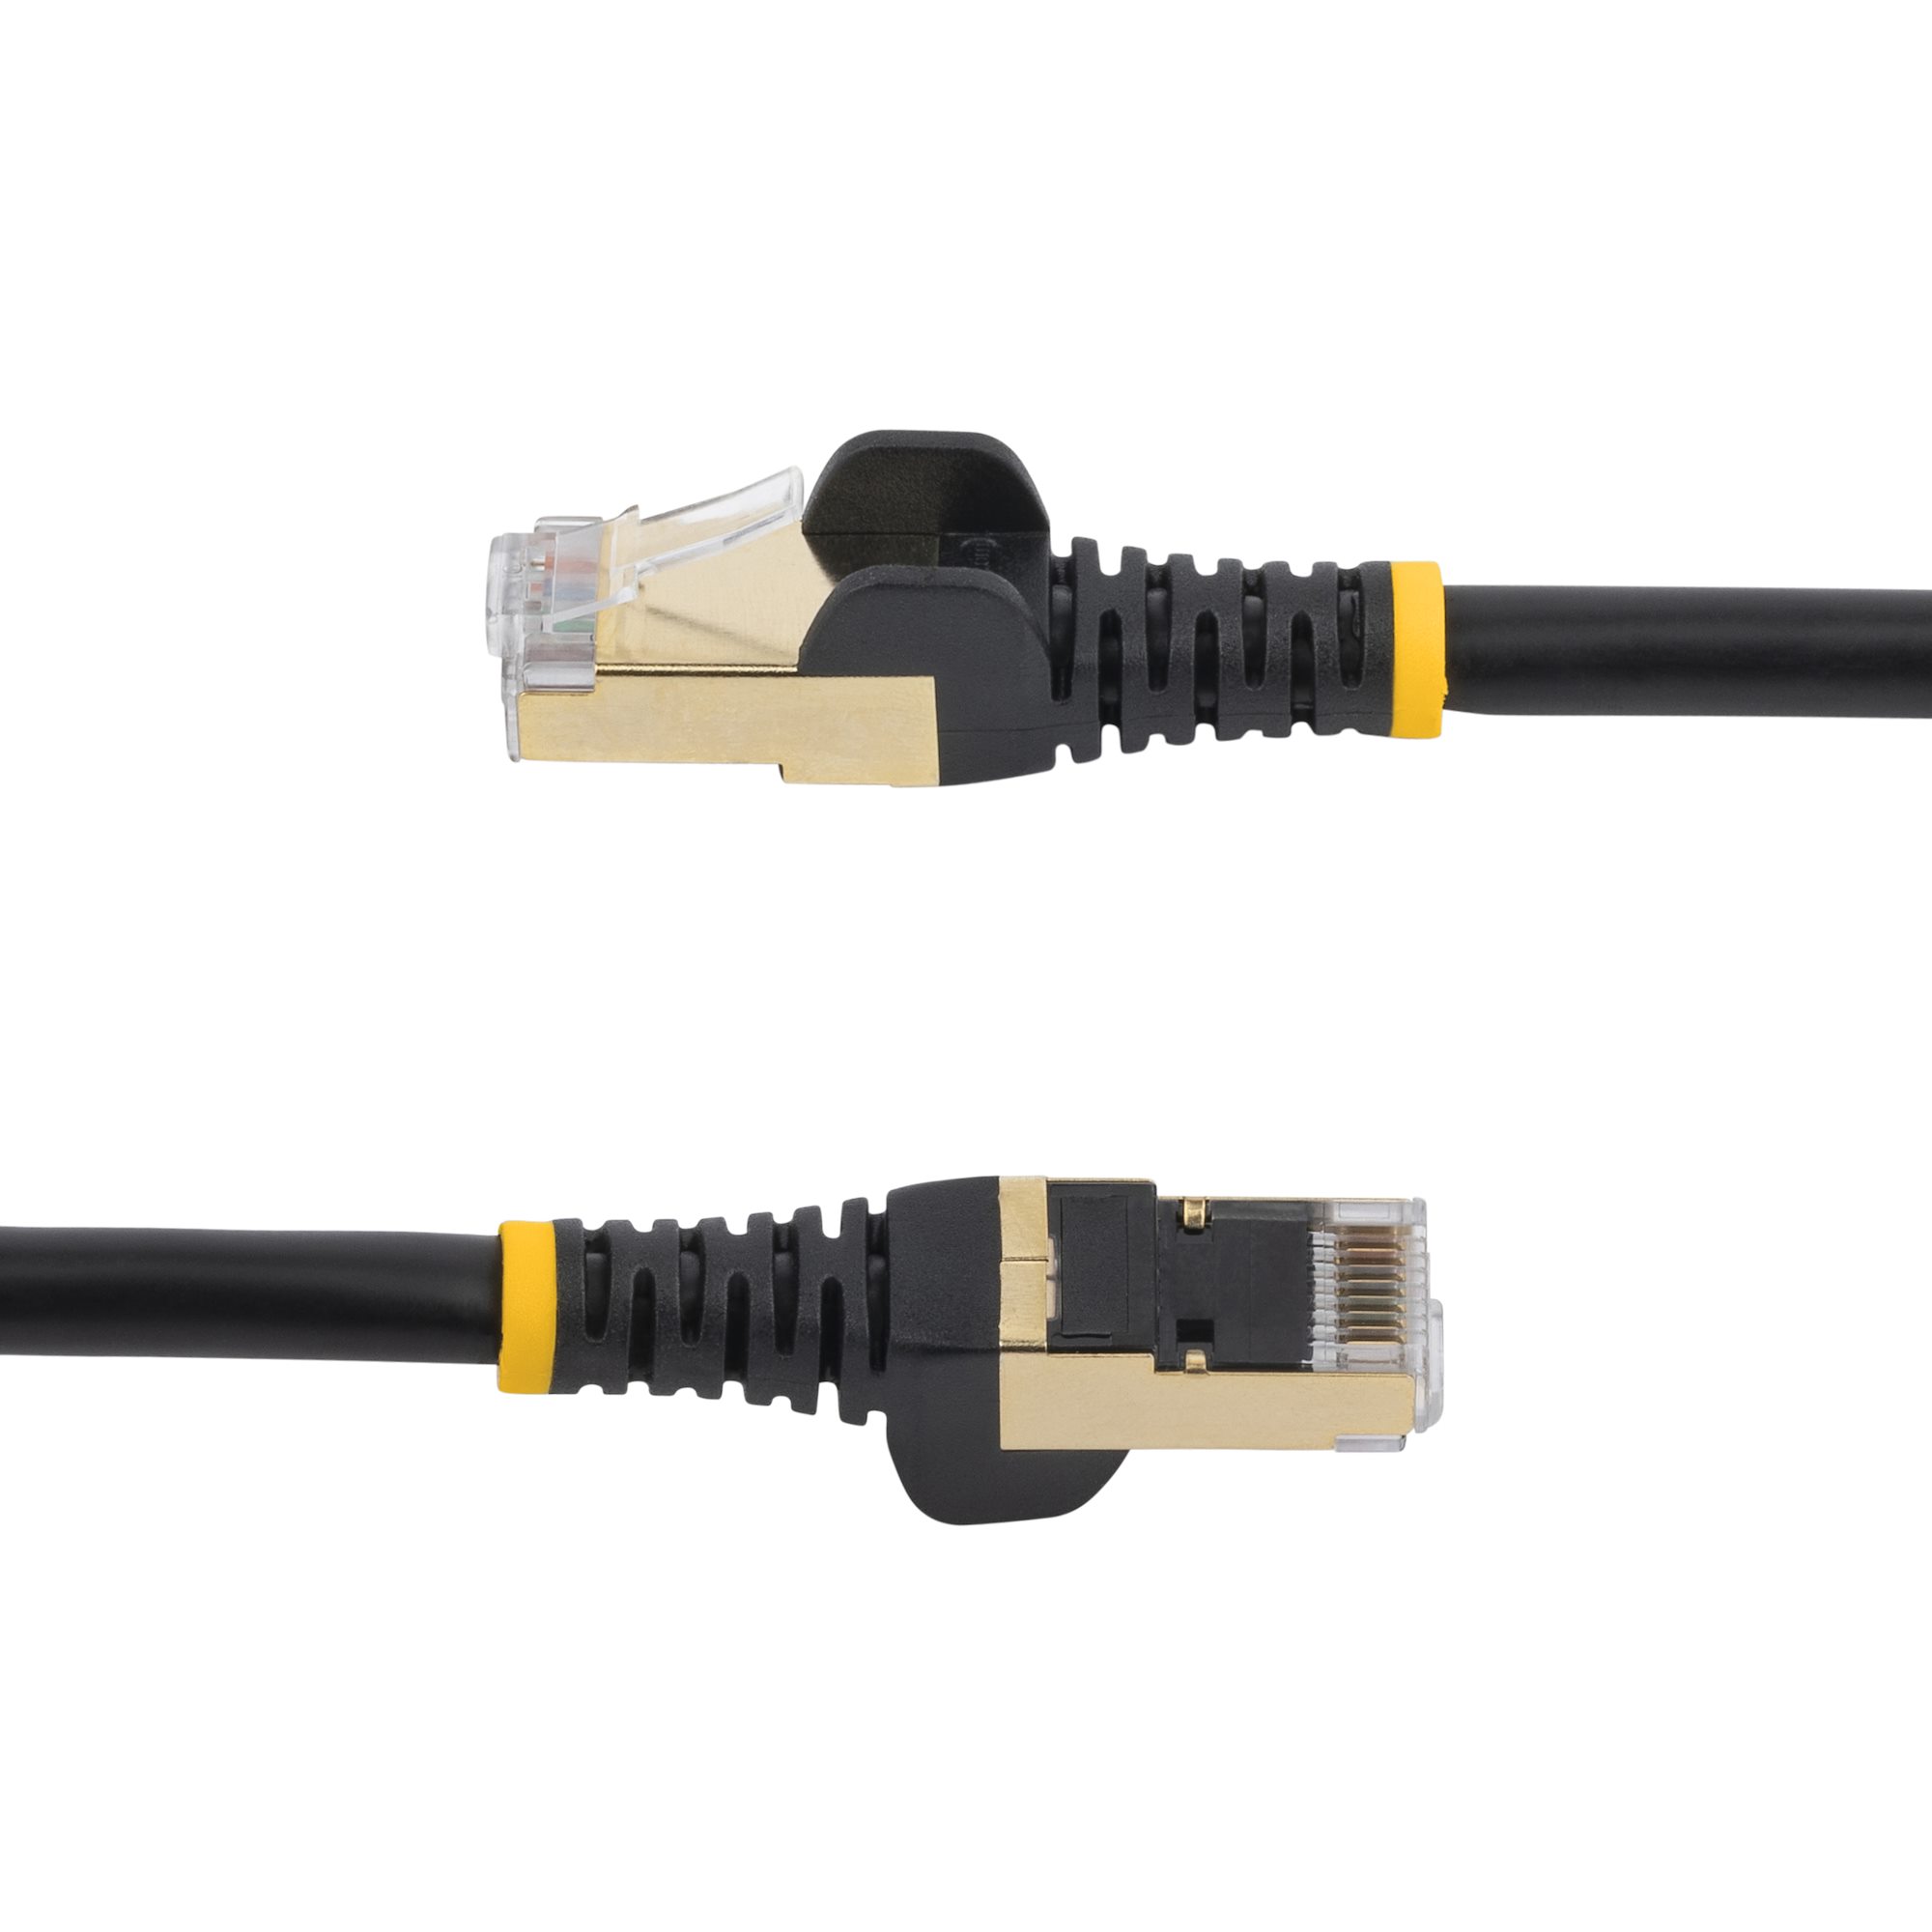 1 ft CAT6a Ethernet Cable - STP Black (C6ASPAT1BK) - Cat 6a Cables, Cables